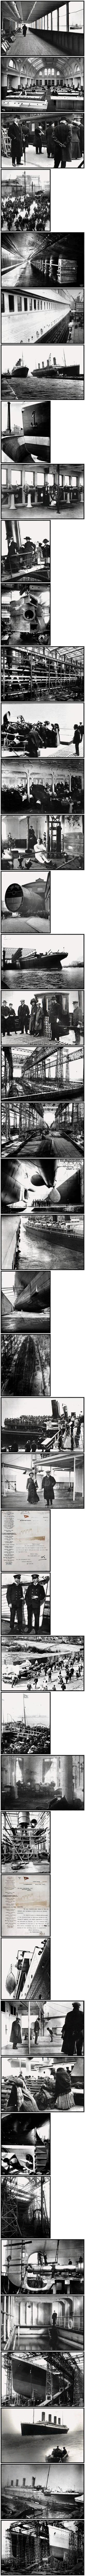 James Cameron's Titanic Explorer - Photographs (CD1)